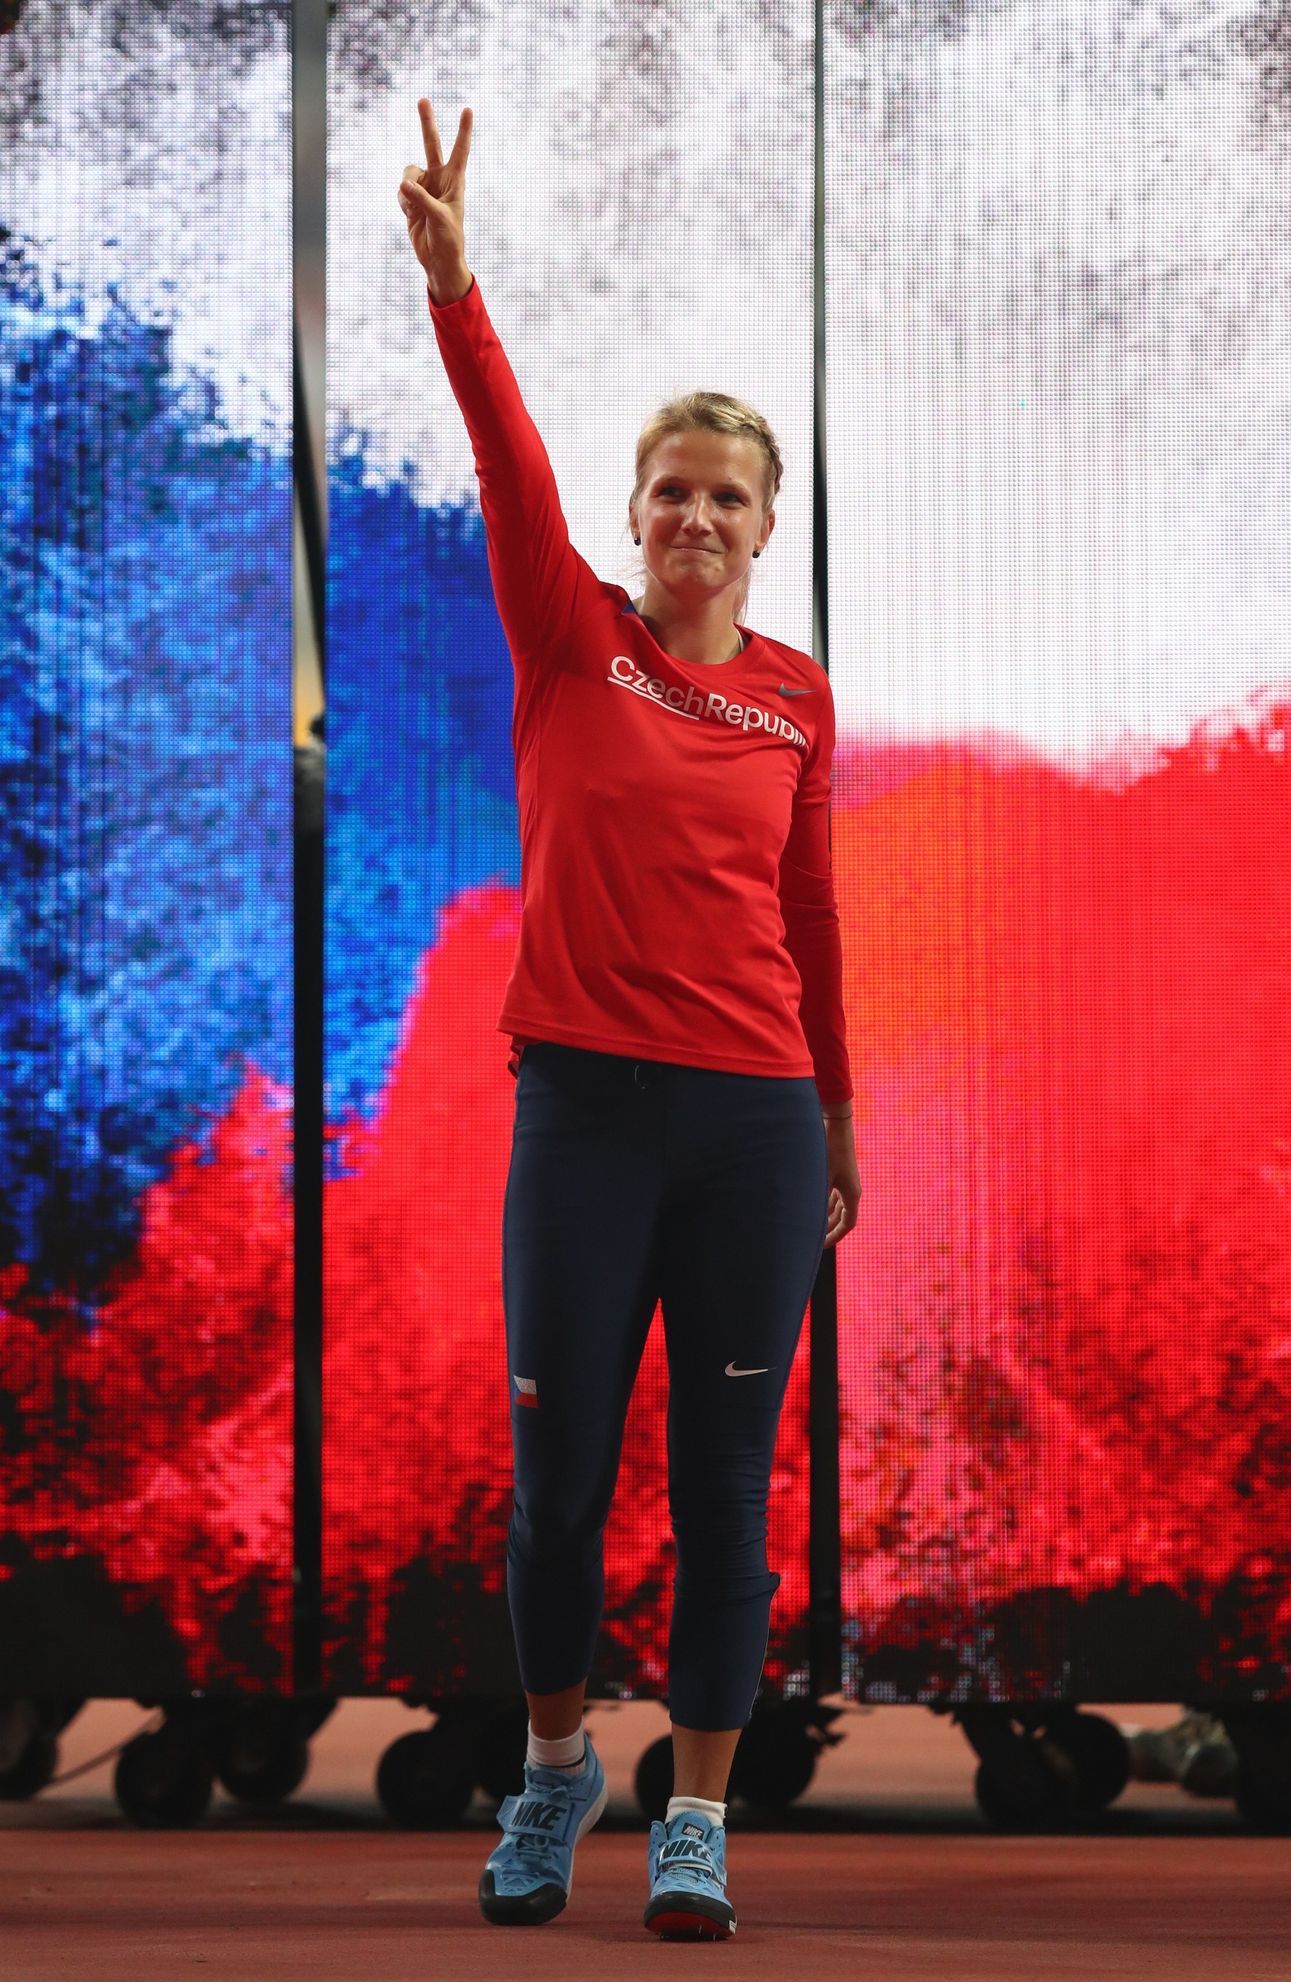 MS v atletice 2019: Česká oštěpařka Irena Šedivá